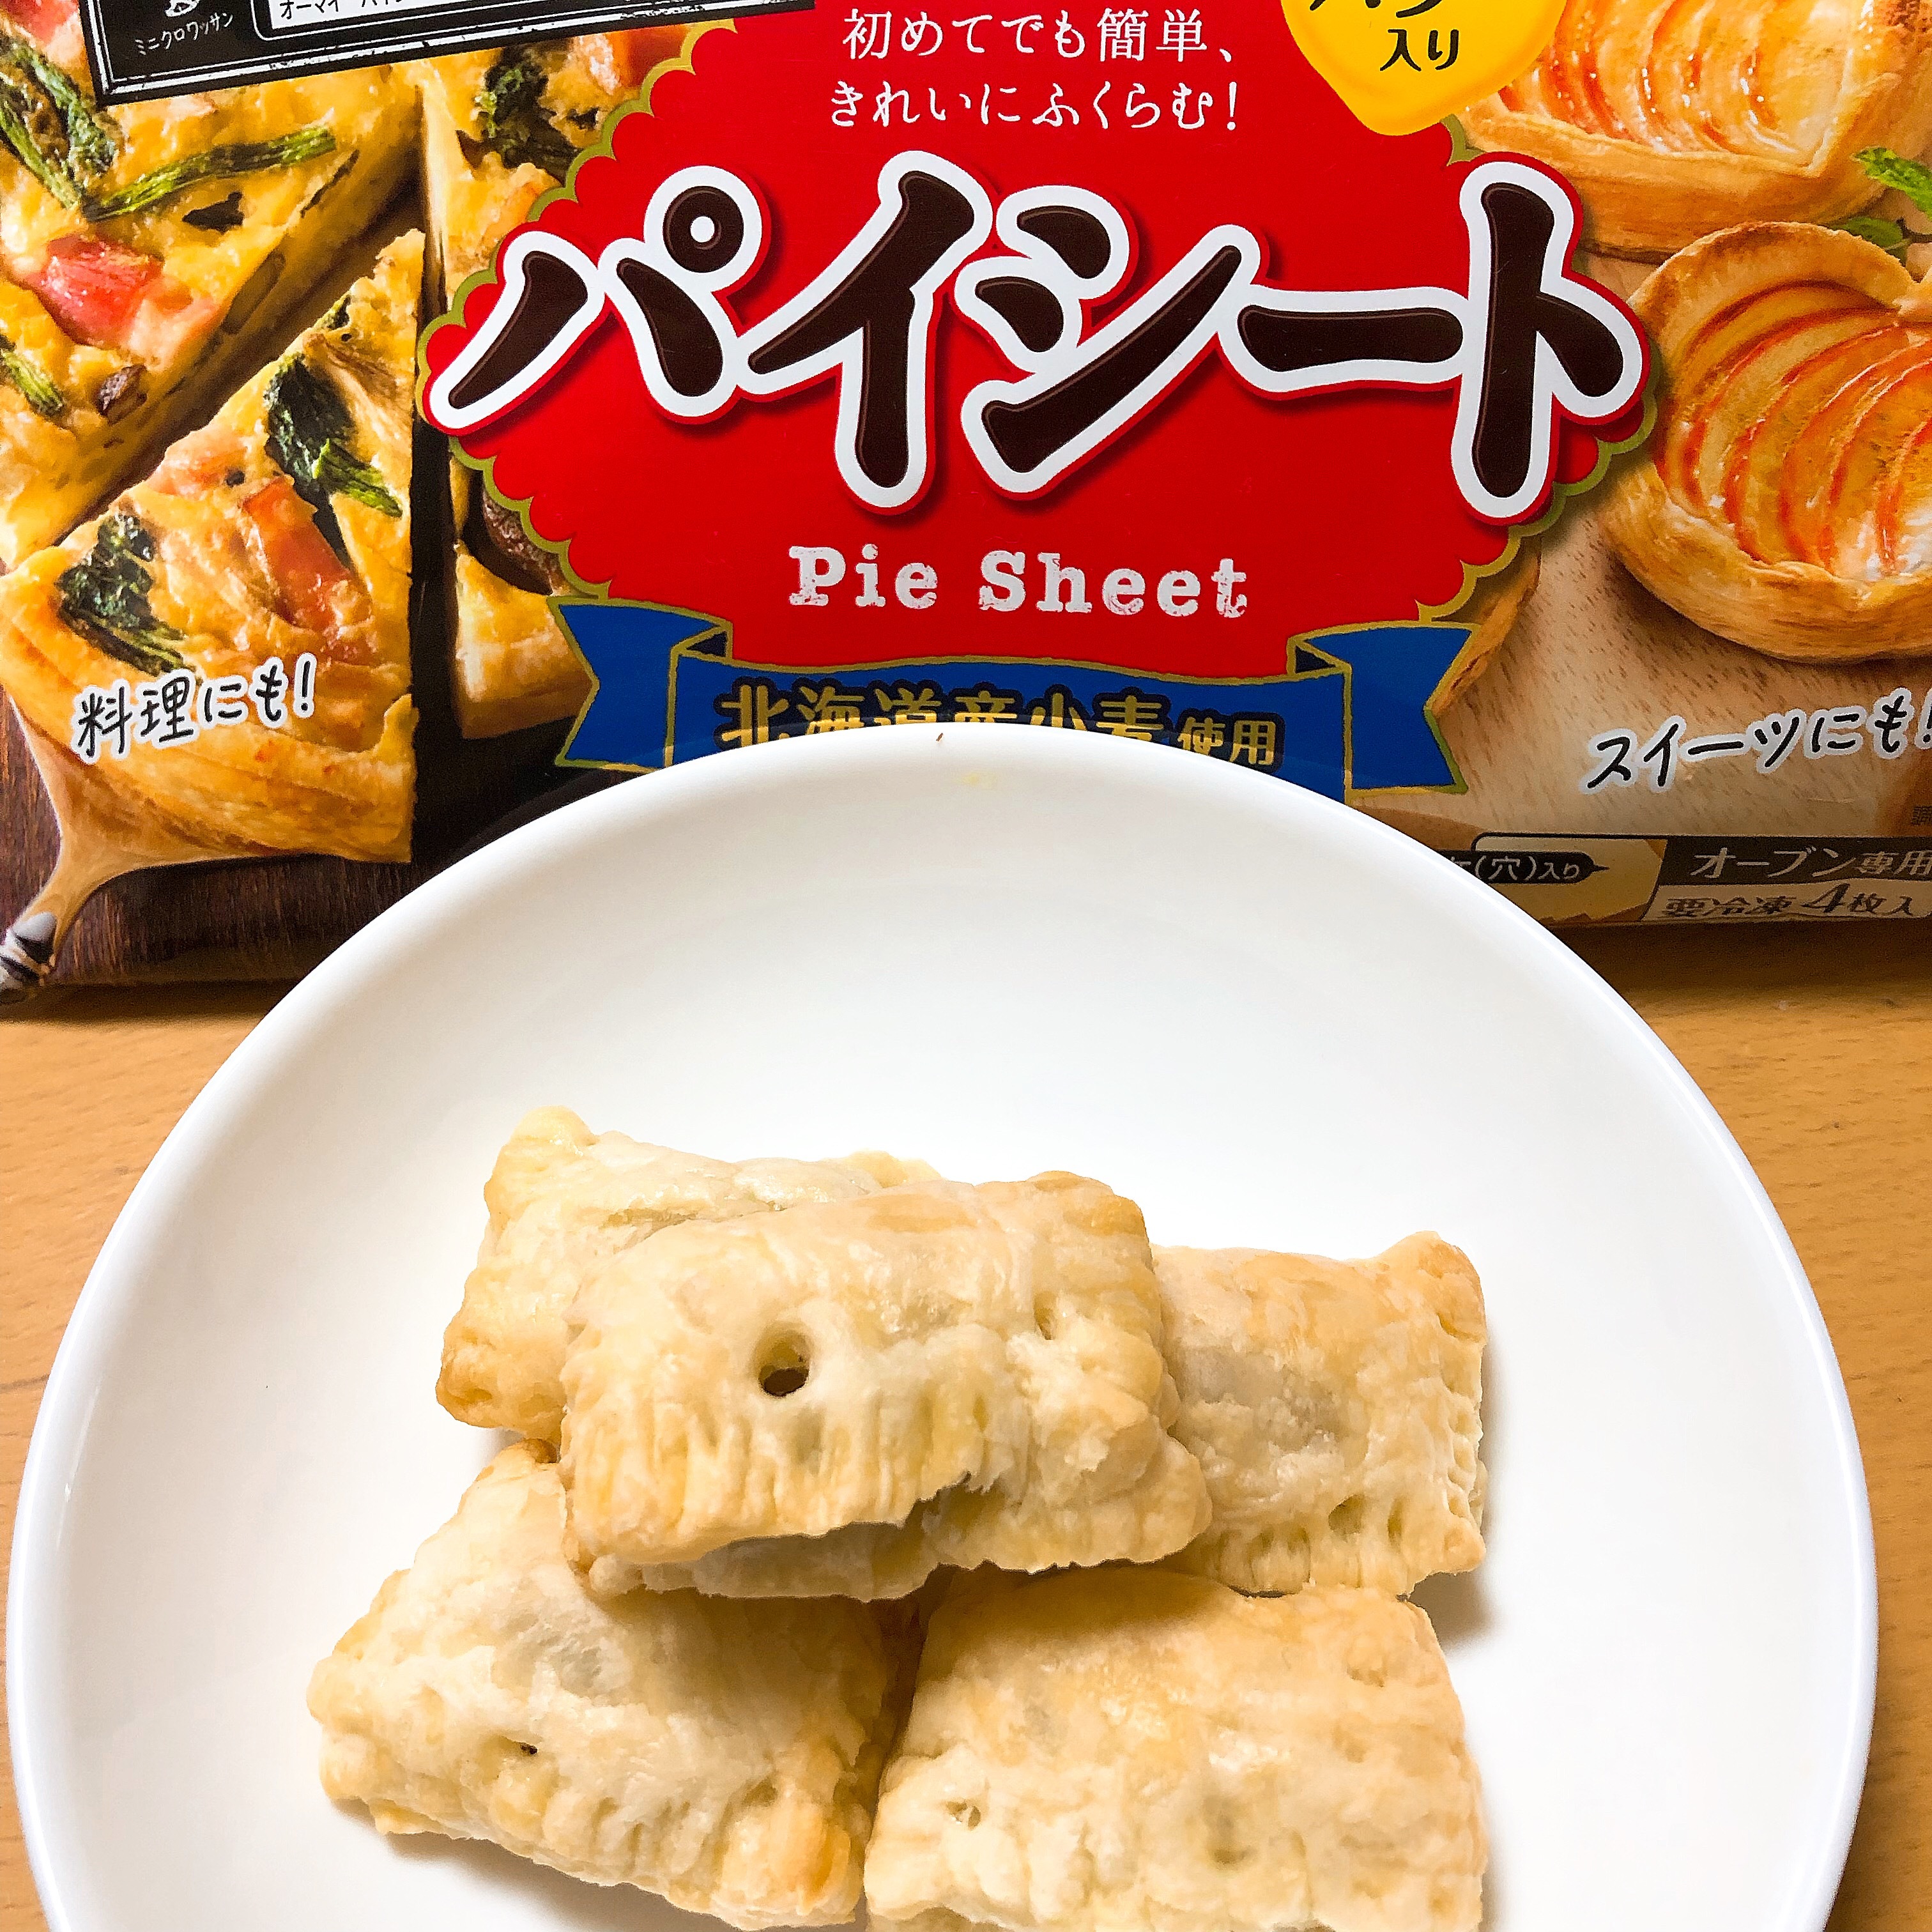 レシピ 日本製粉のチョコパイ 冷凍食品の冷食 Com パイシートがあればいつでもチョコパイが簡単にできます 温かいチョコパイも美味しいです